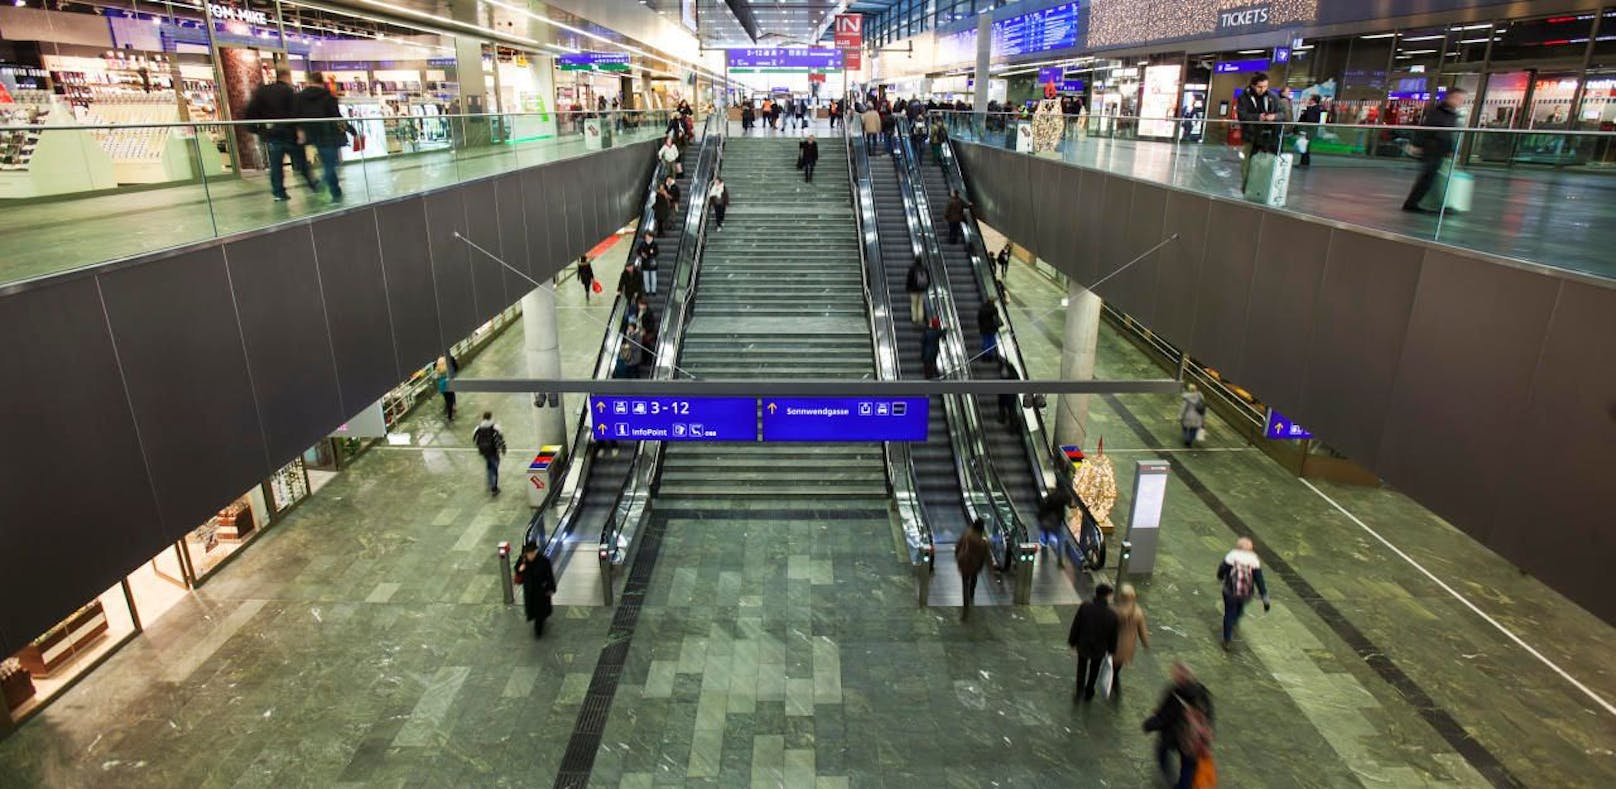 Der Vorfall ereignete sich am Wiener Hauptbahnhof.